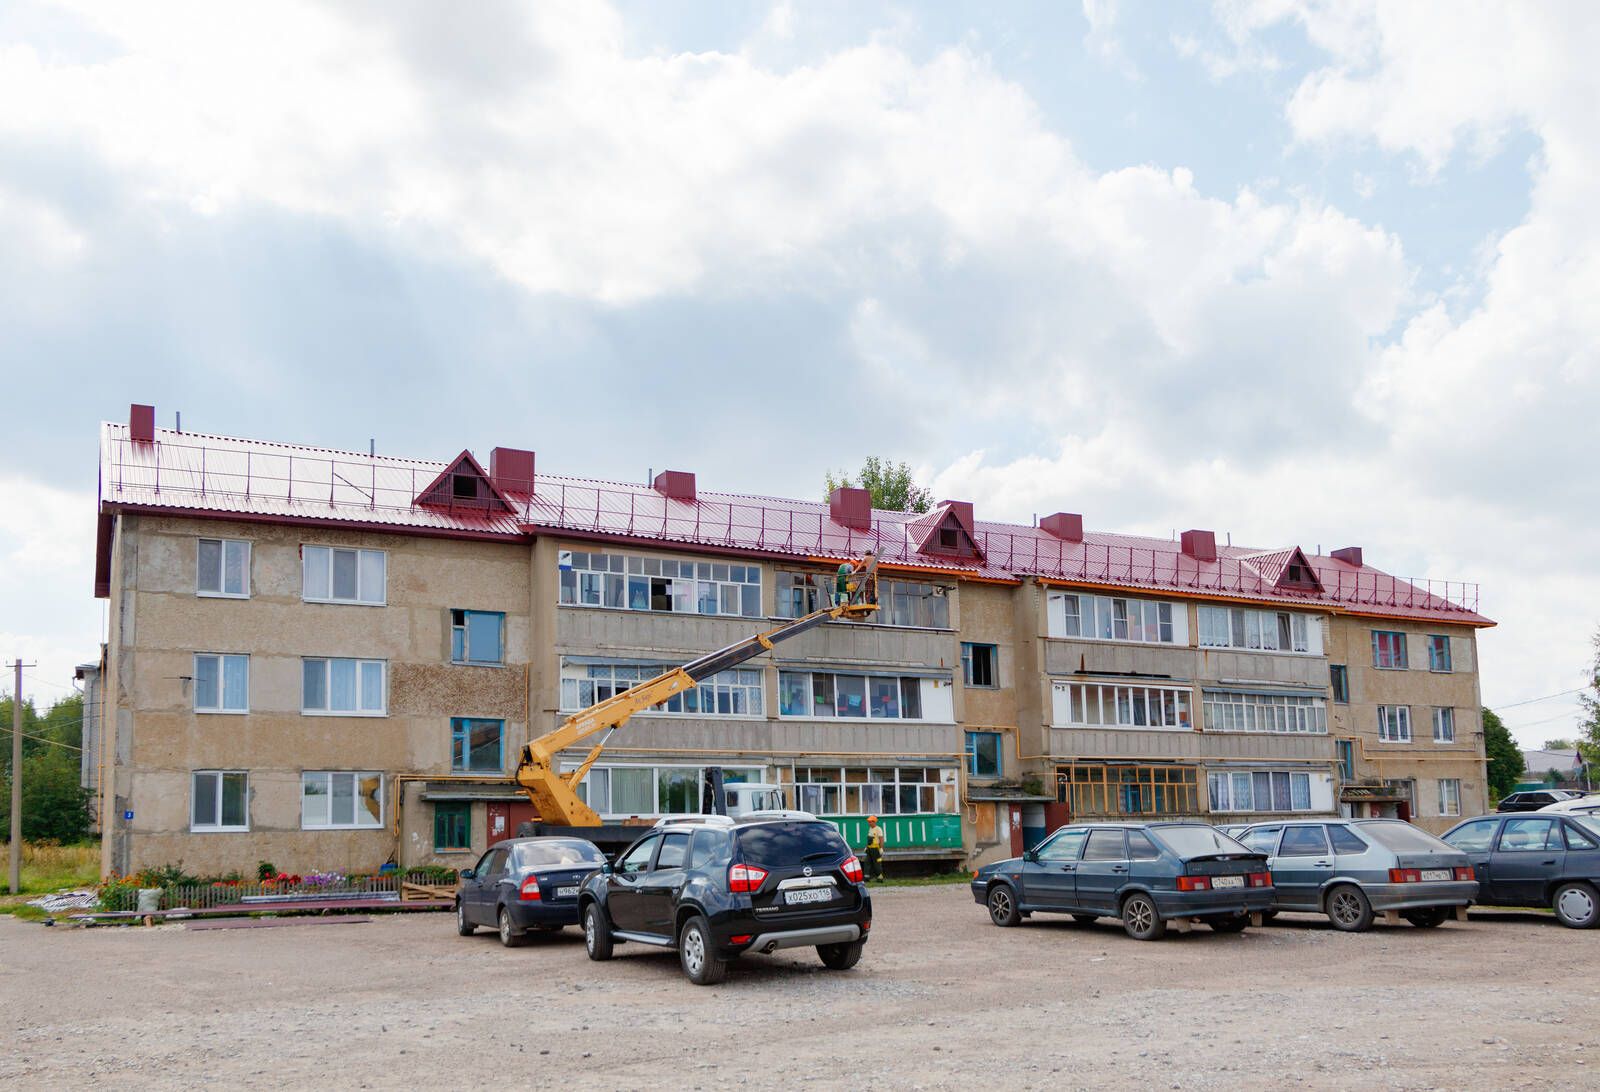 Капитальный ремонт крыши дома в Верхнем Услоне по улице Заовражная близится к завершению